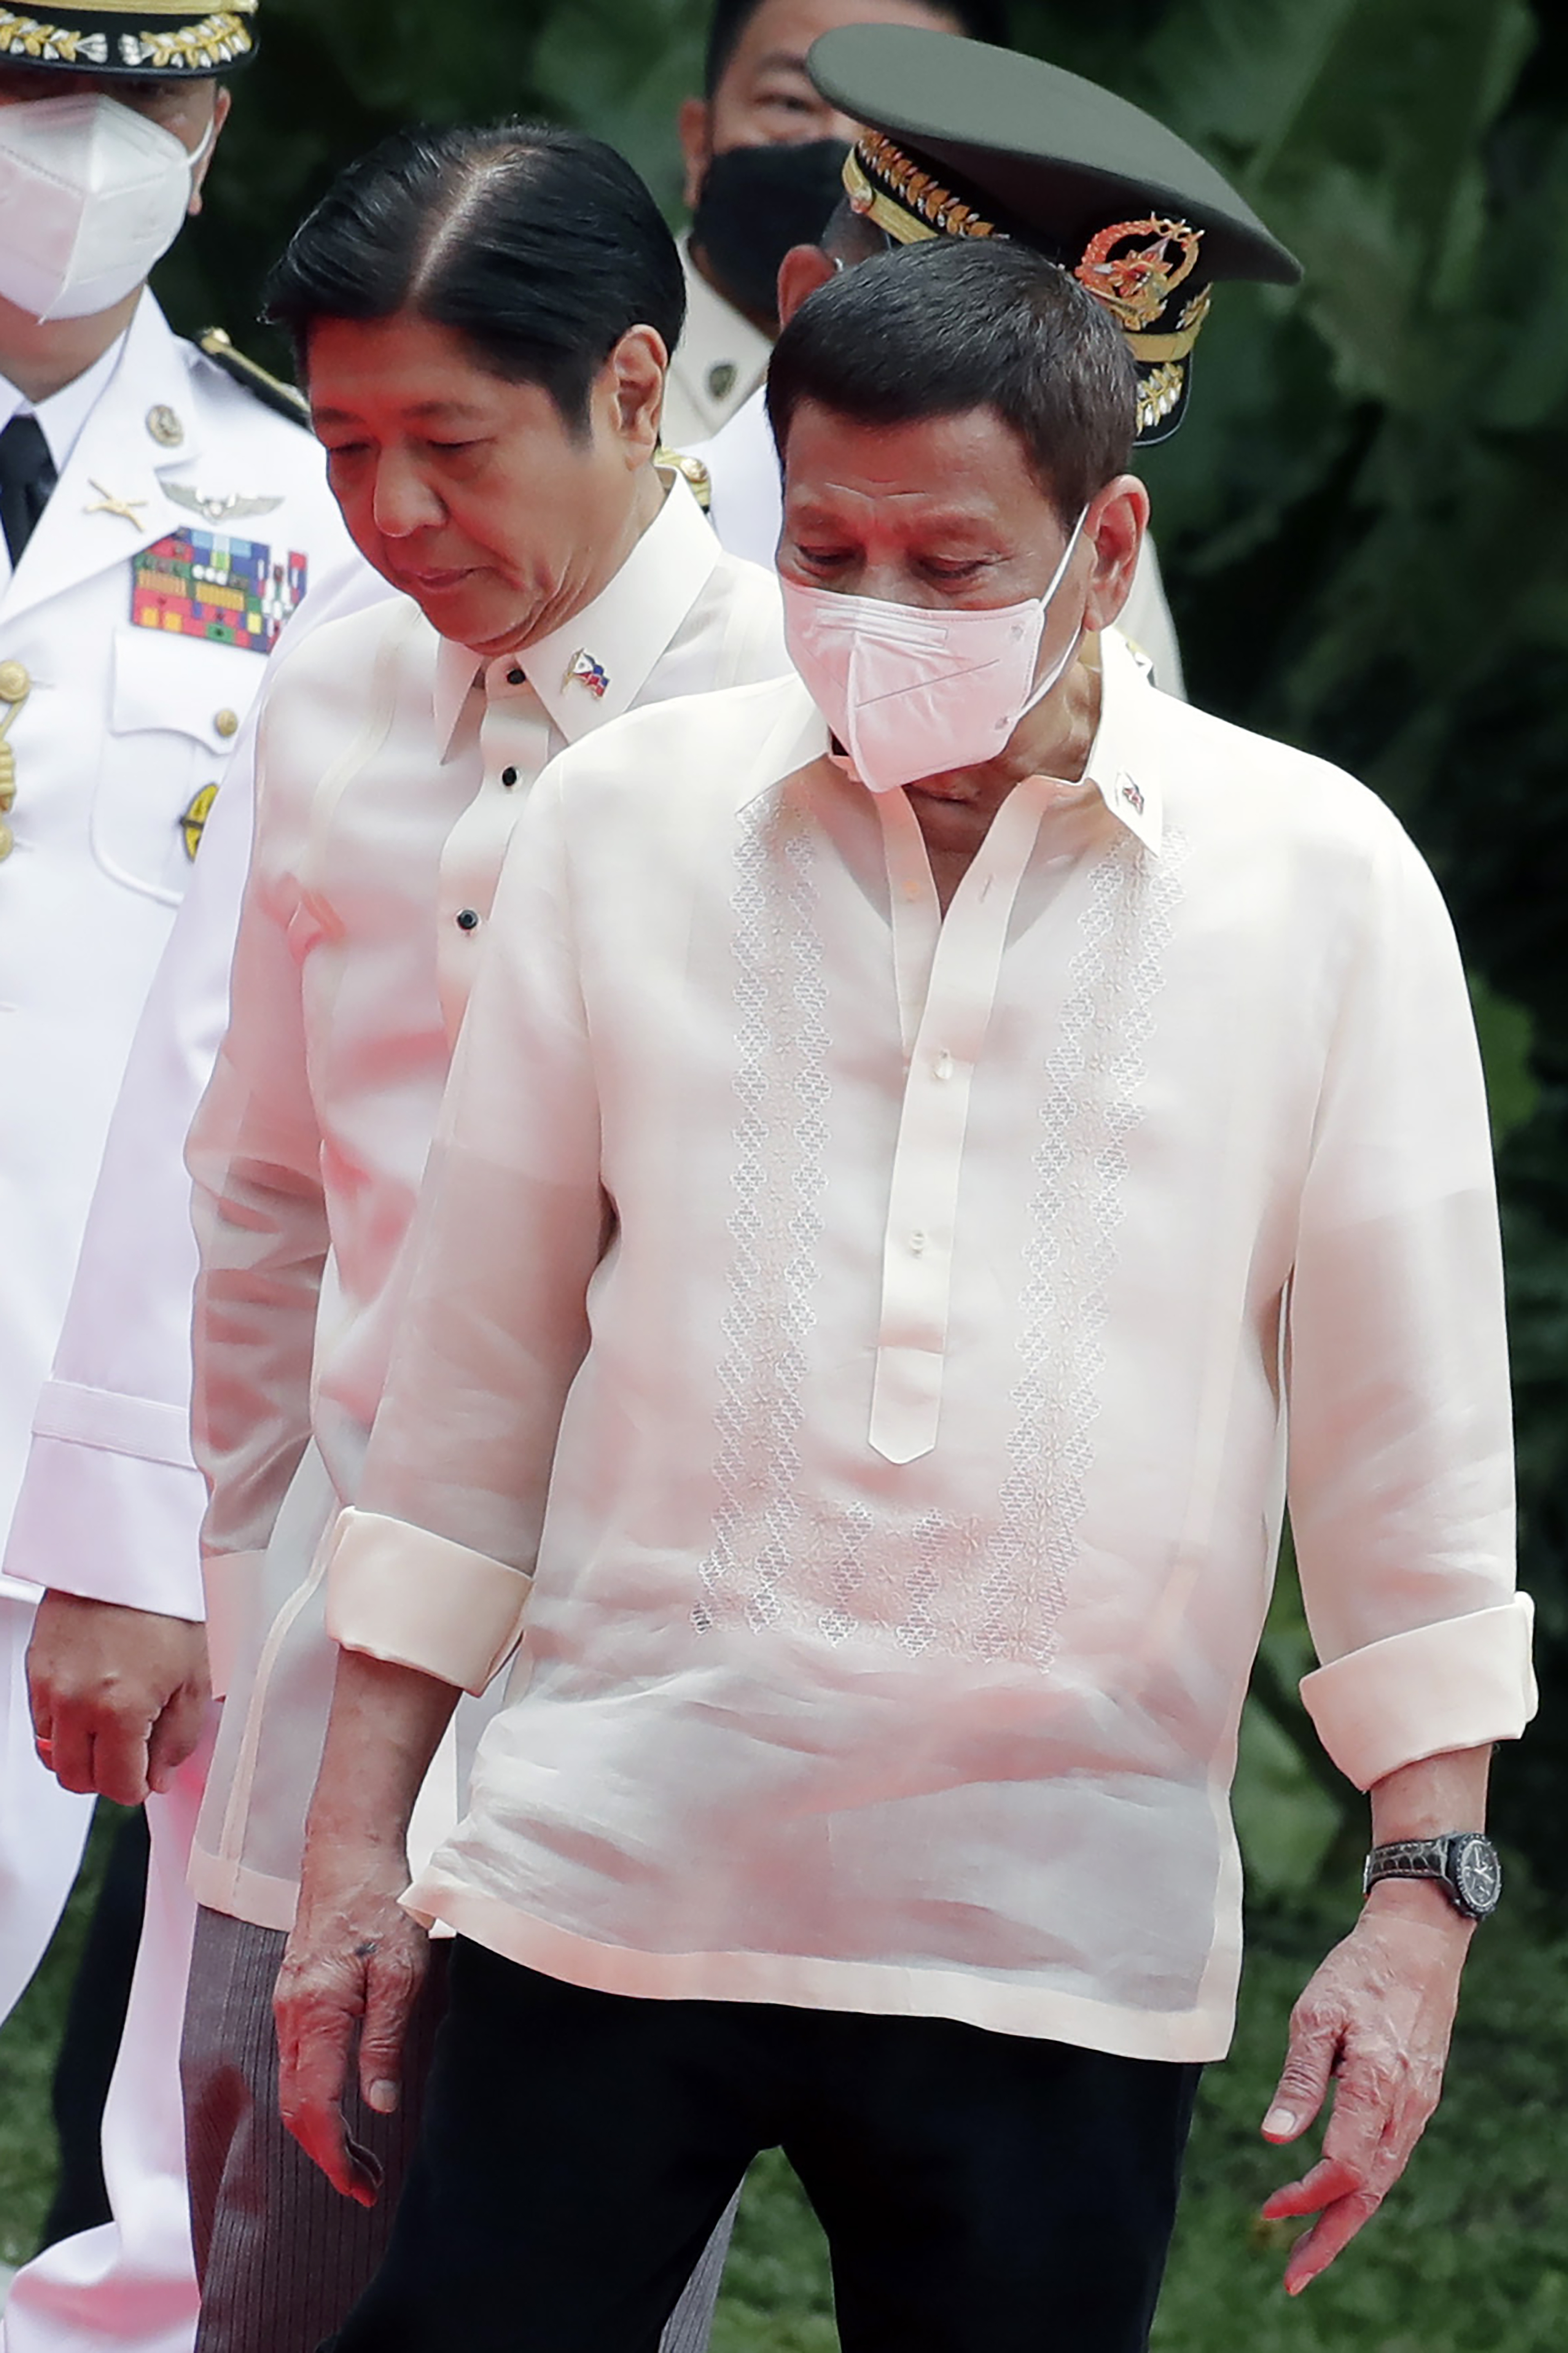 Bongbong Marcos Ailesinin Acımasız Mirasını Değiştirebilir mi?